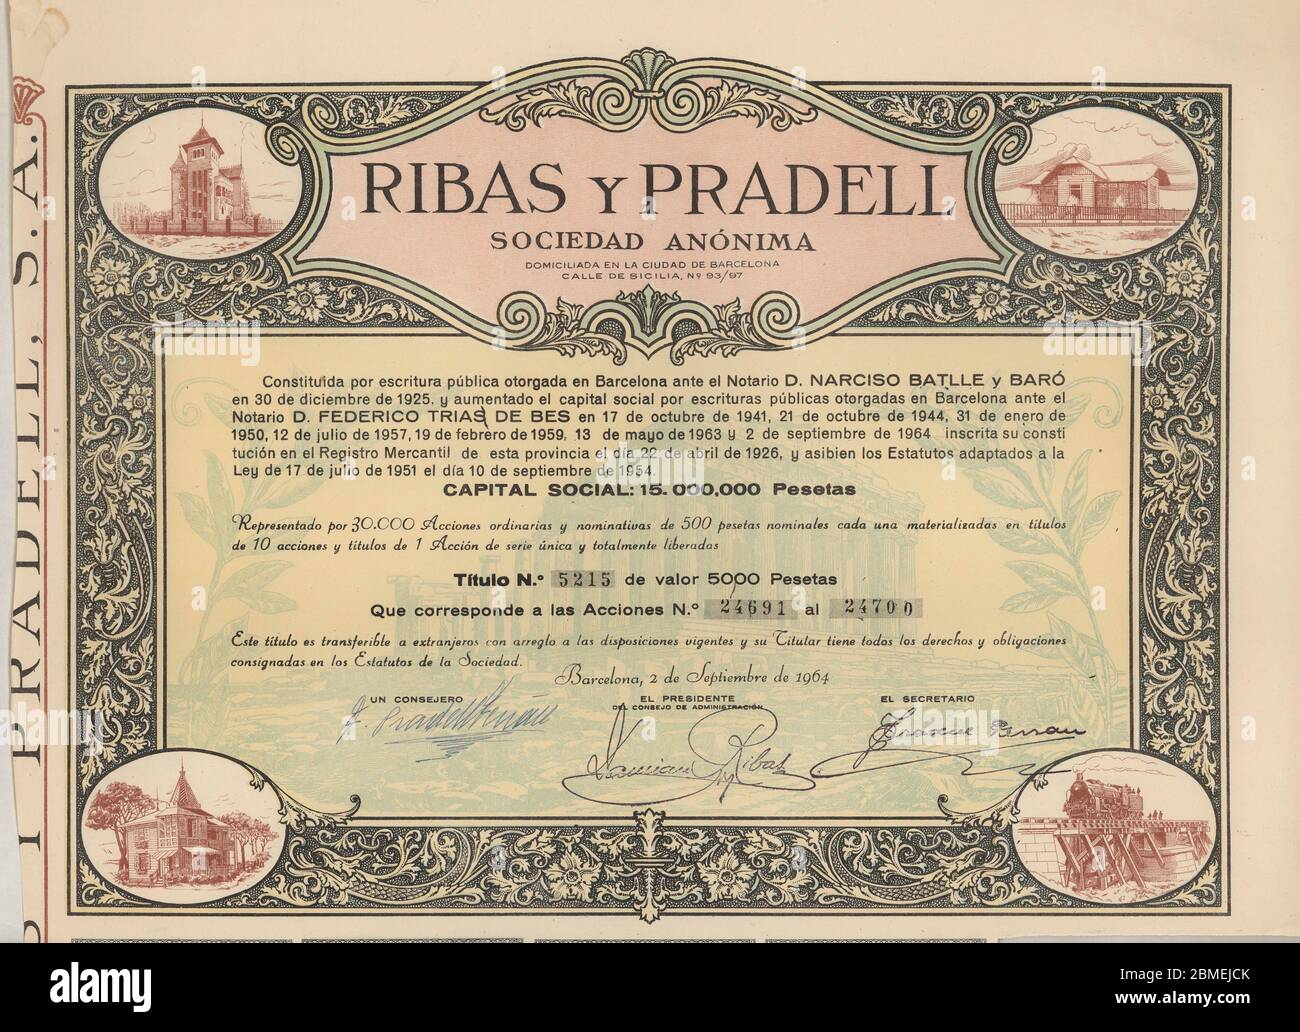 Título de diez acciones de 500 pesetas cada una emitidas por Ribas y Pradell Sociedad Anónima. Barcelona, septiembre de 1964. Stock Photo